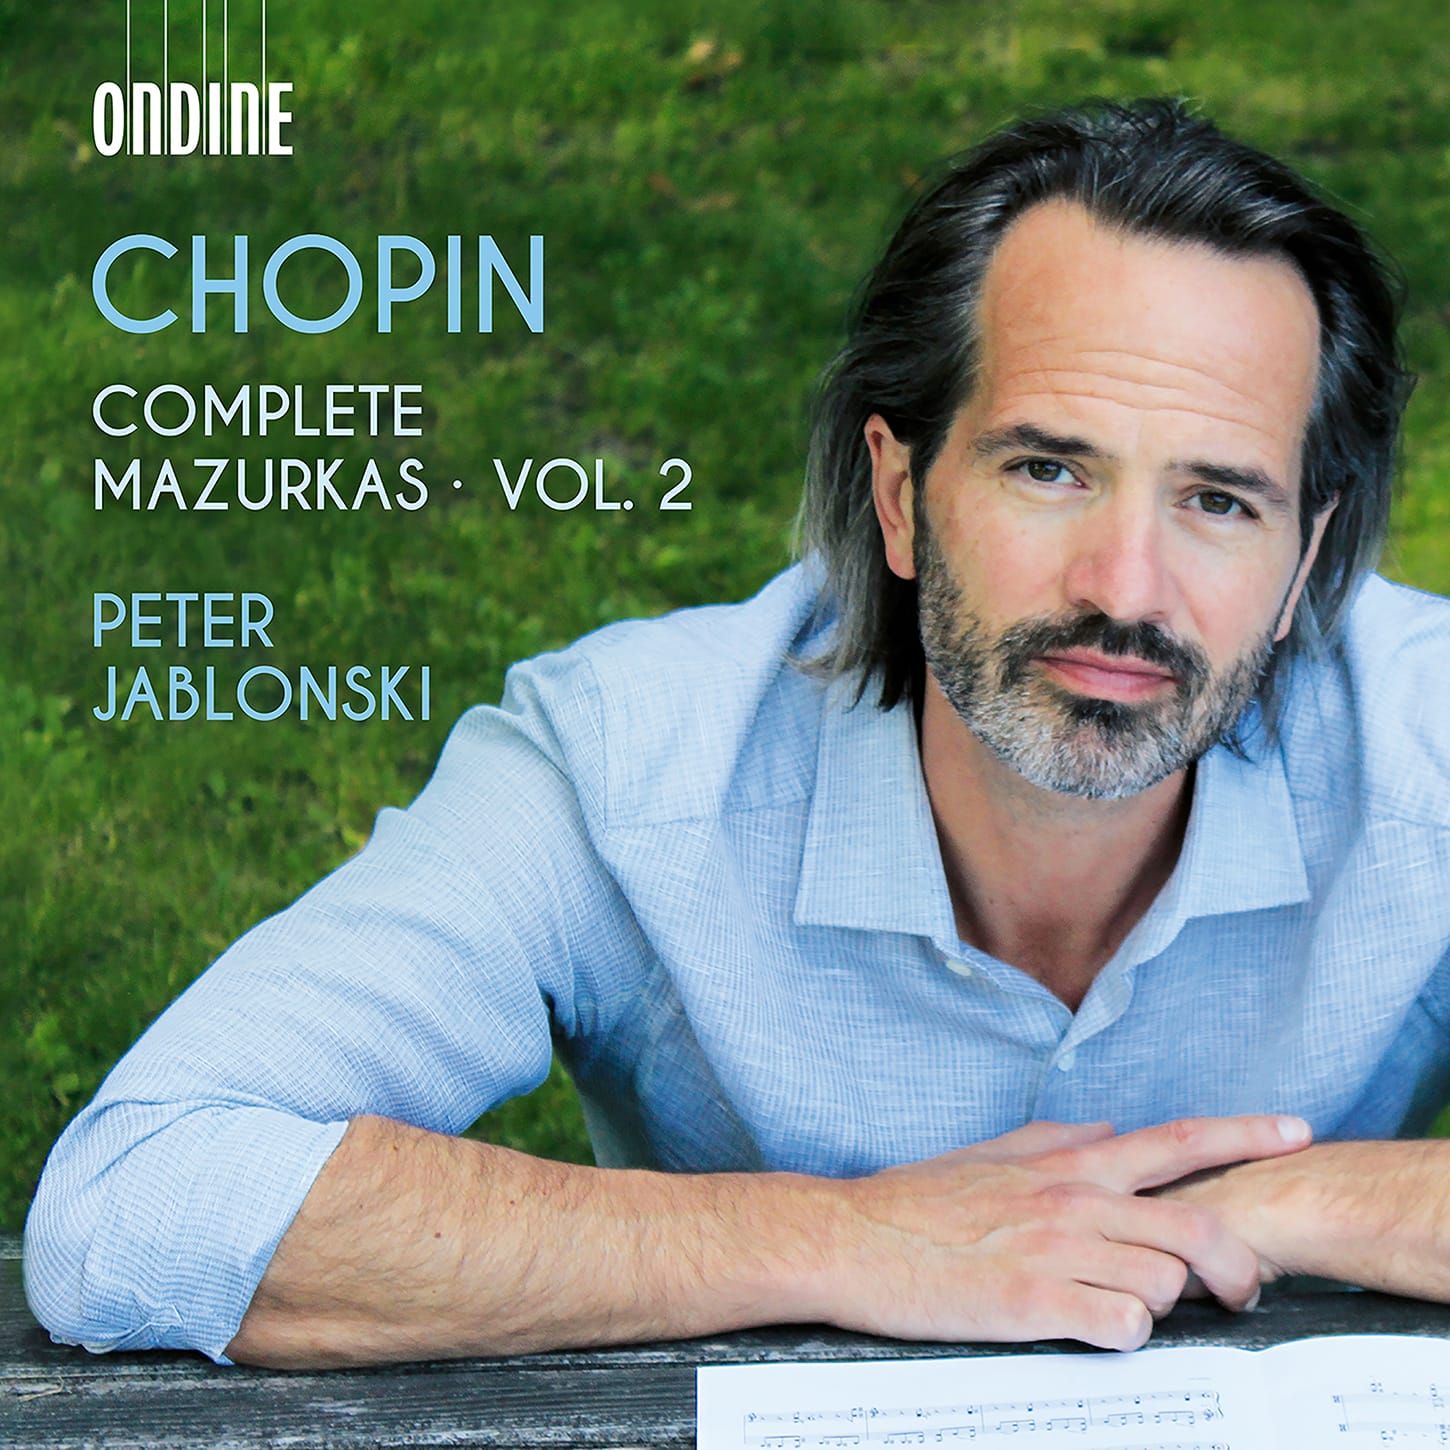 Chopin Mazurkas from Peter Jablonski